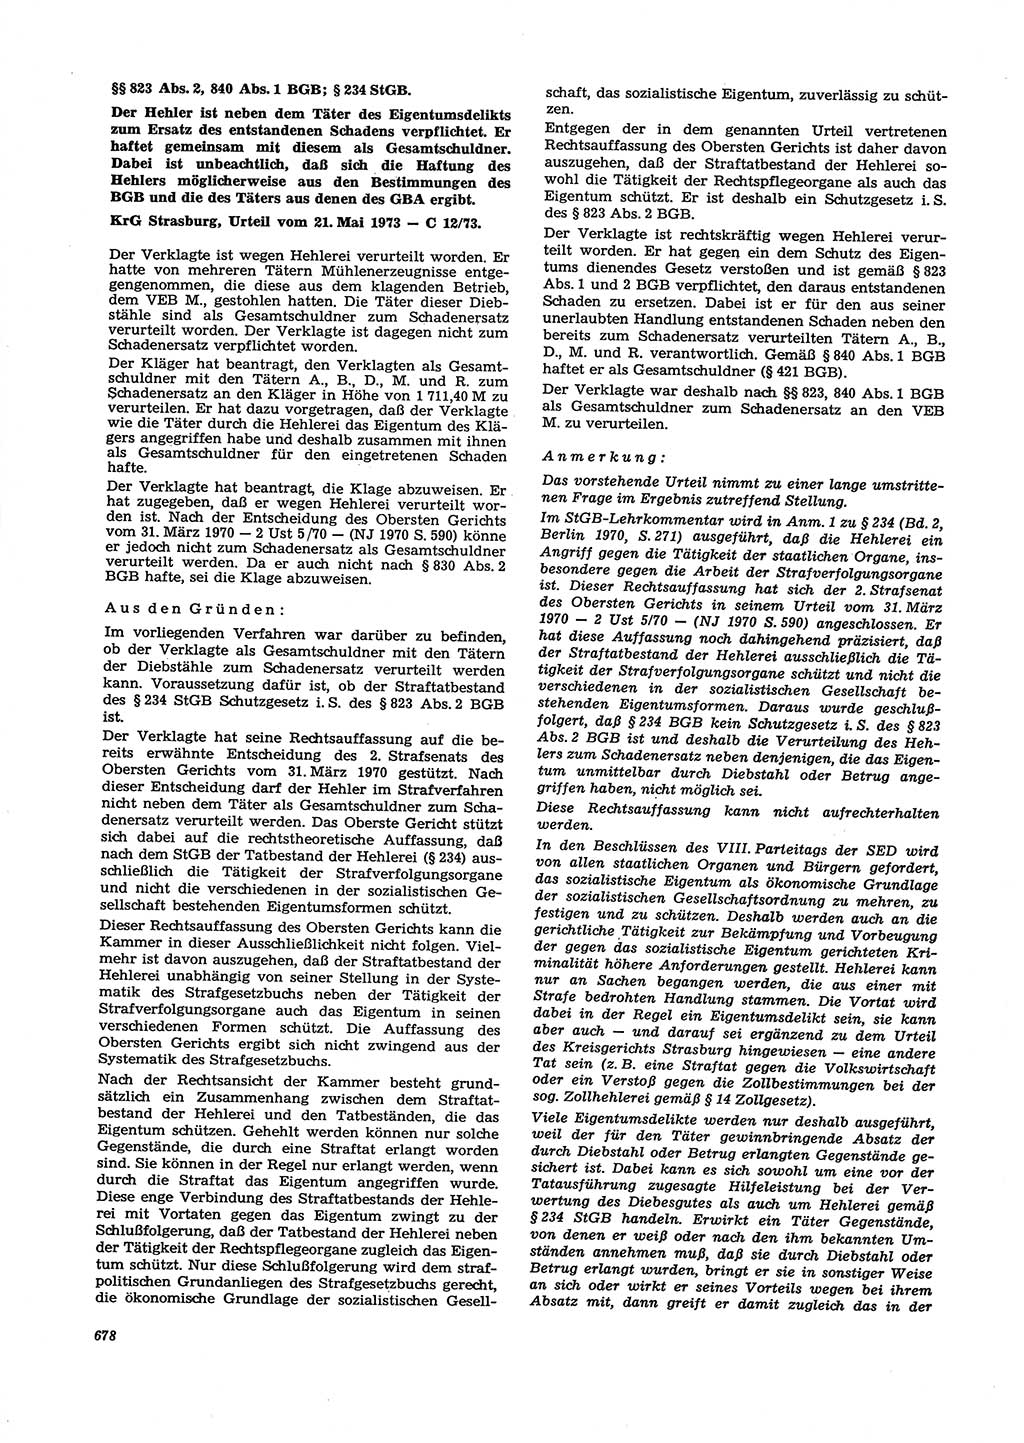 Neue Justiz (NJ), Zeitschrift für Recht und Rechtswissenschaft [Deutsche Demokratische Republik (DDR)], 27. Jahrgang 1973, Seite 678 (NJ DDR 1973, S. 678)